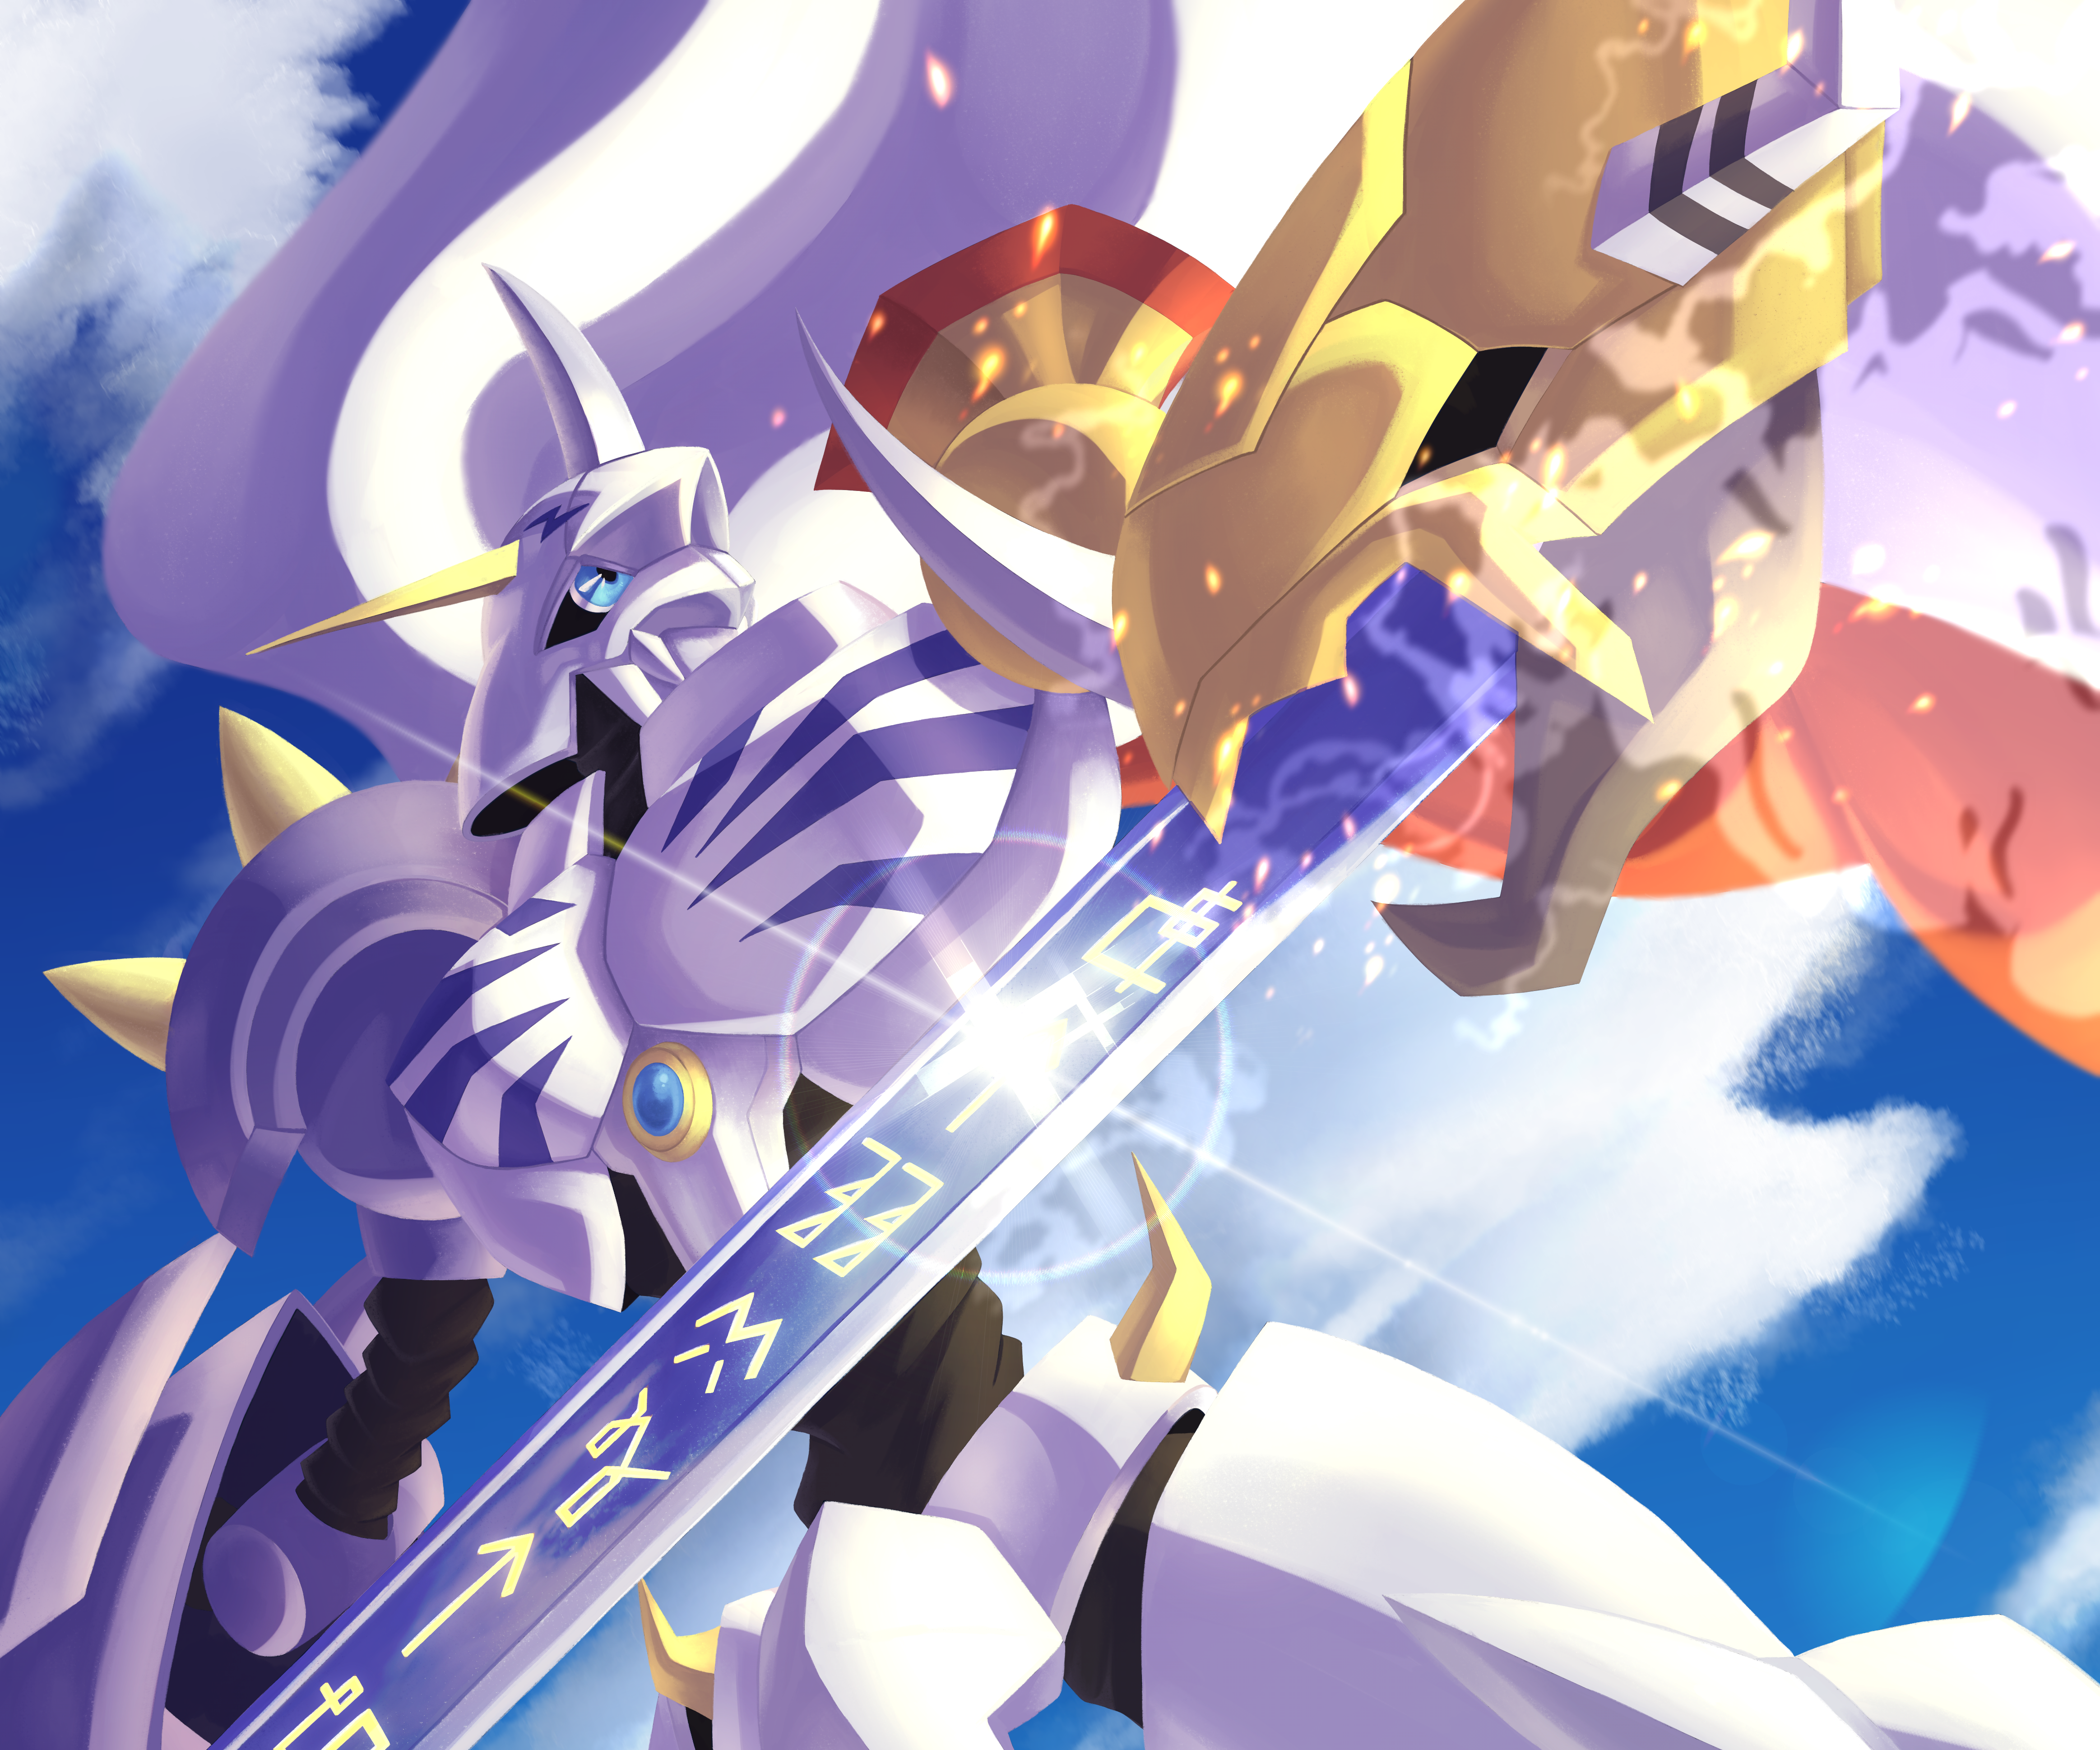 Anime Digimon Adventure Tri. HD Wallpaper